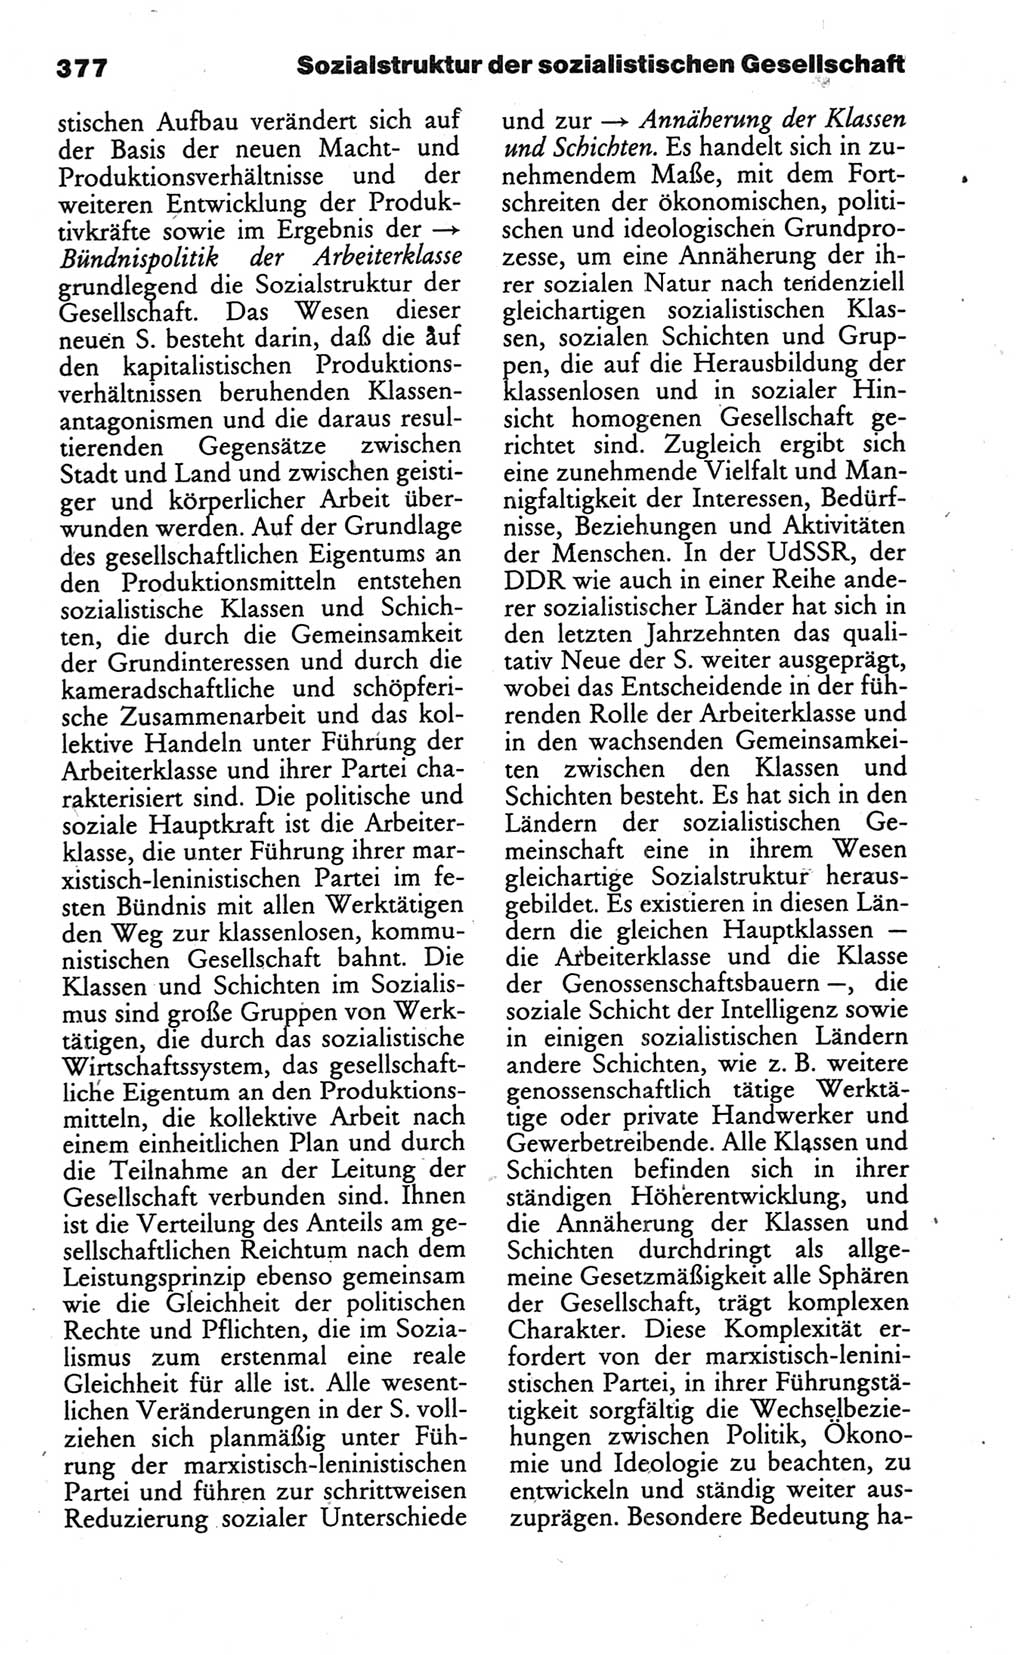 Wörterbuch des wissenschaftlichen Kommunismus [Deutsche Demokratische Republik (DDR)] 1986, Seite 377 (Wb. wiss. Komm. DDR 1986, S. 377)